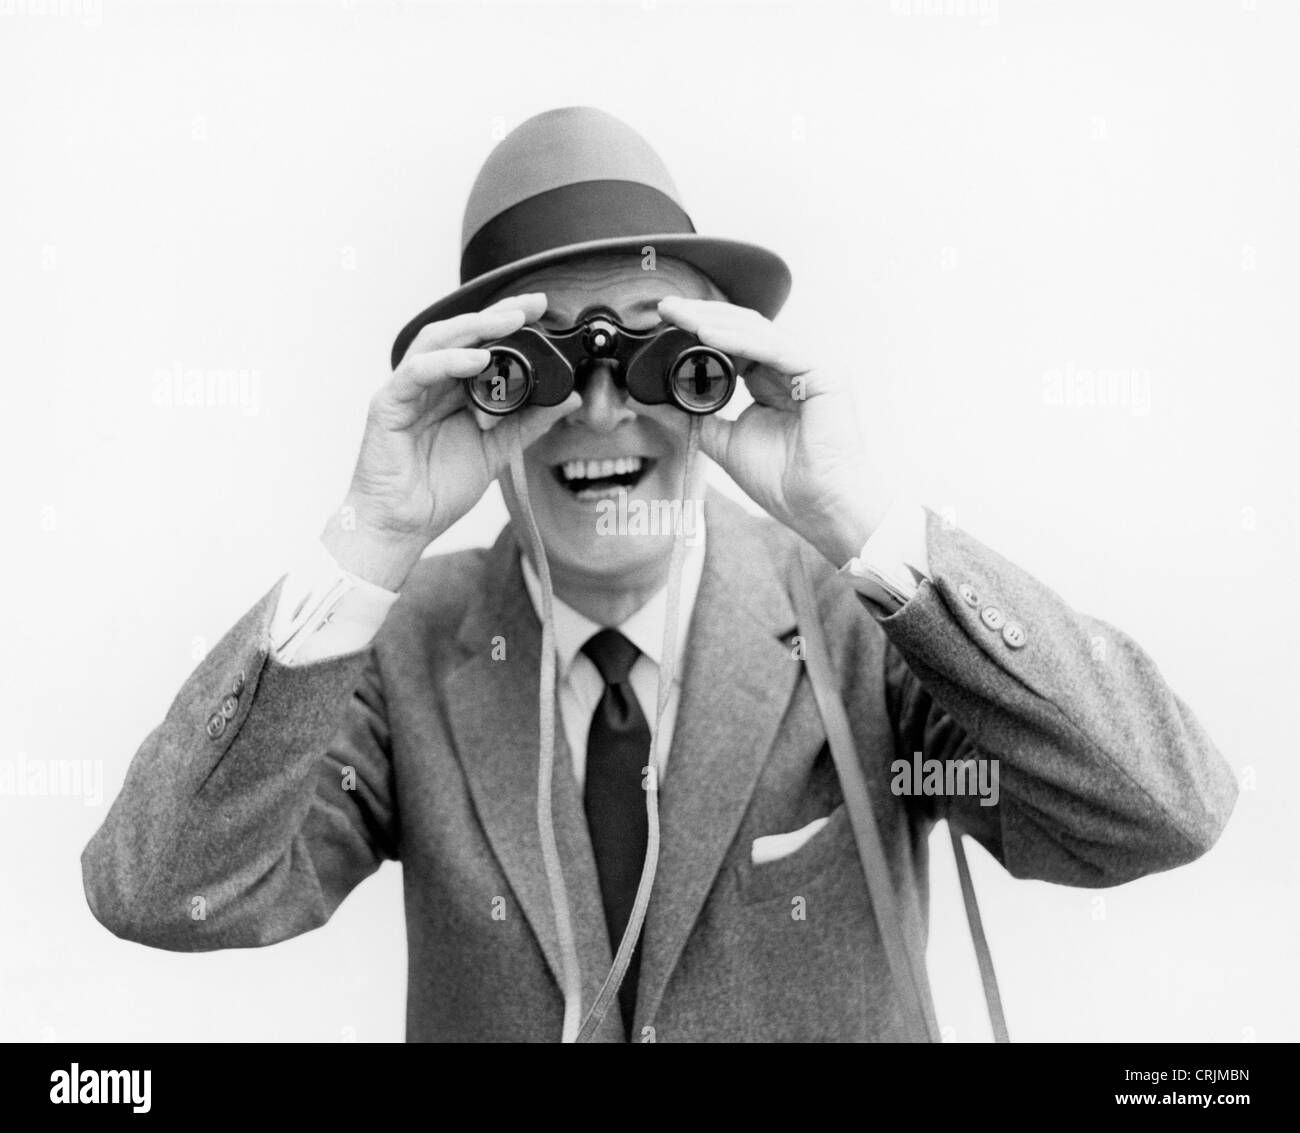 Man looking through binoculars Stock Photo